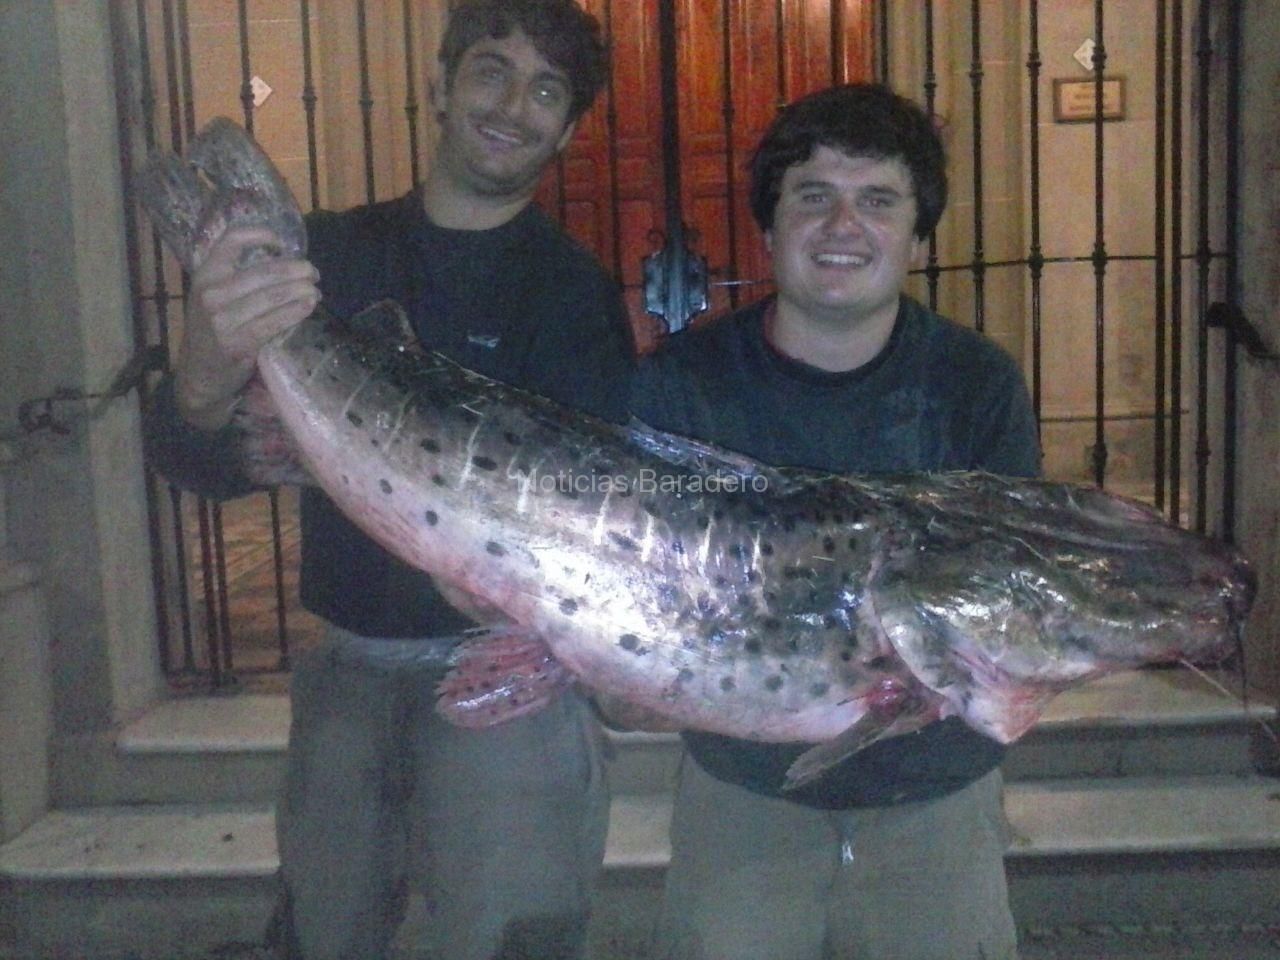 Baradero: Pescaron un surubí de 23 kilos